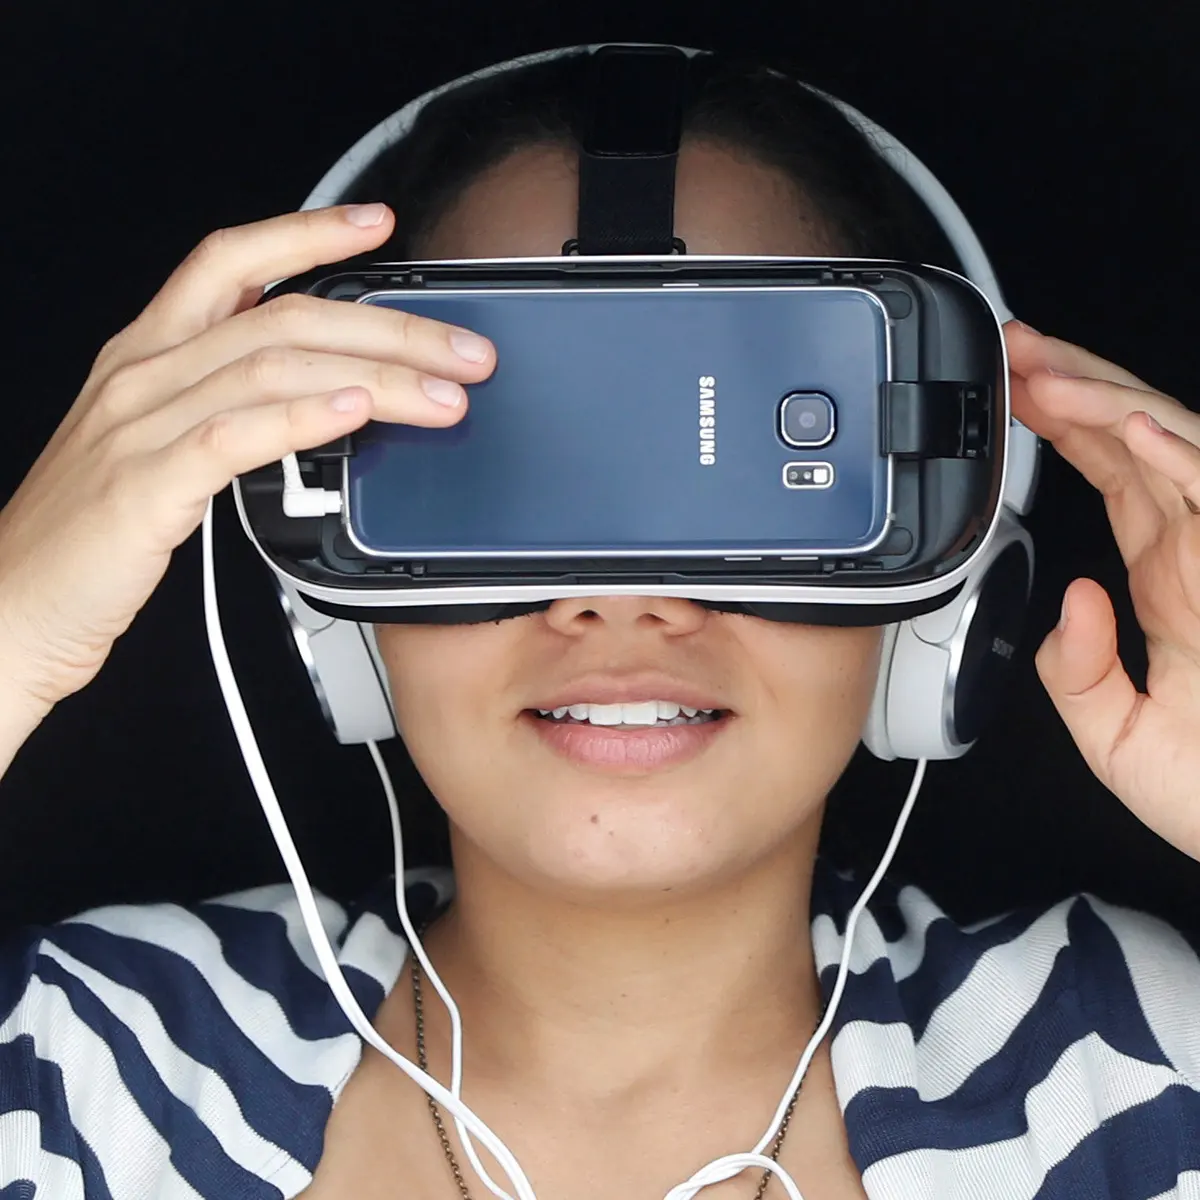 图片展示一位女性戴着虚拟现实头盔和耳机，似乎正在体验沉浸式的虚拟现实内容，背景为纯色。